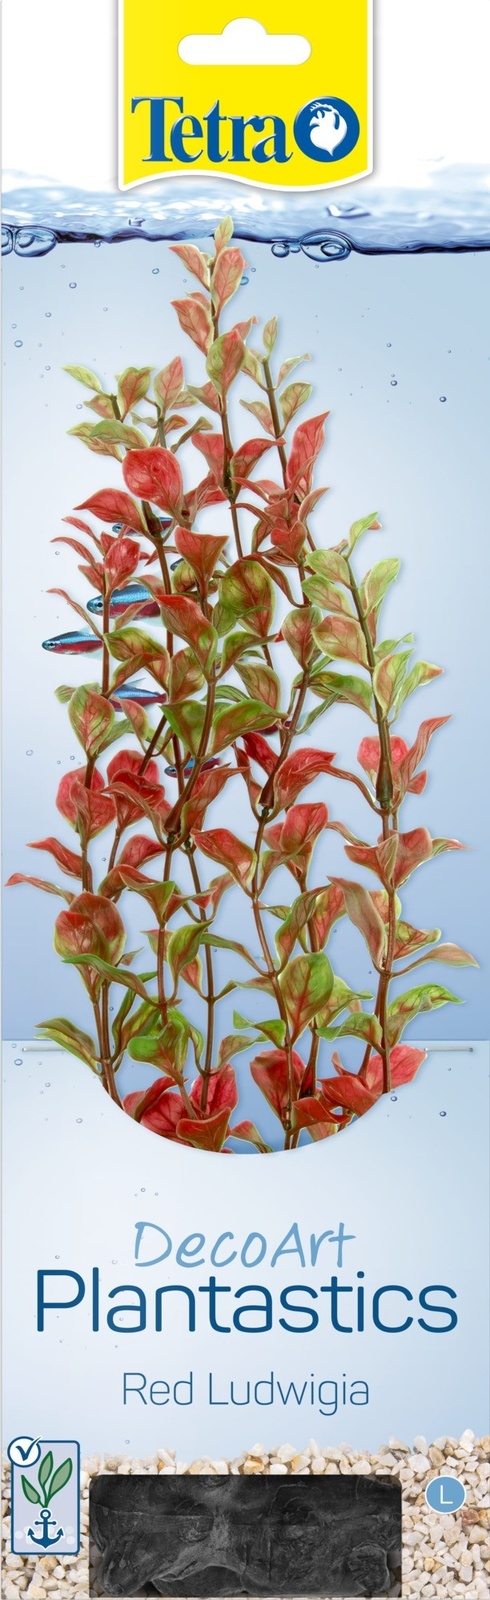 Tetra (оборудование) Tetra (оборудование) растение DecoArt Plantastics Red Ludvigia 30 см (115 г) искусственное растение artuniq ludwigia green 20